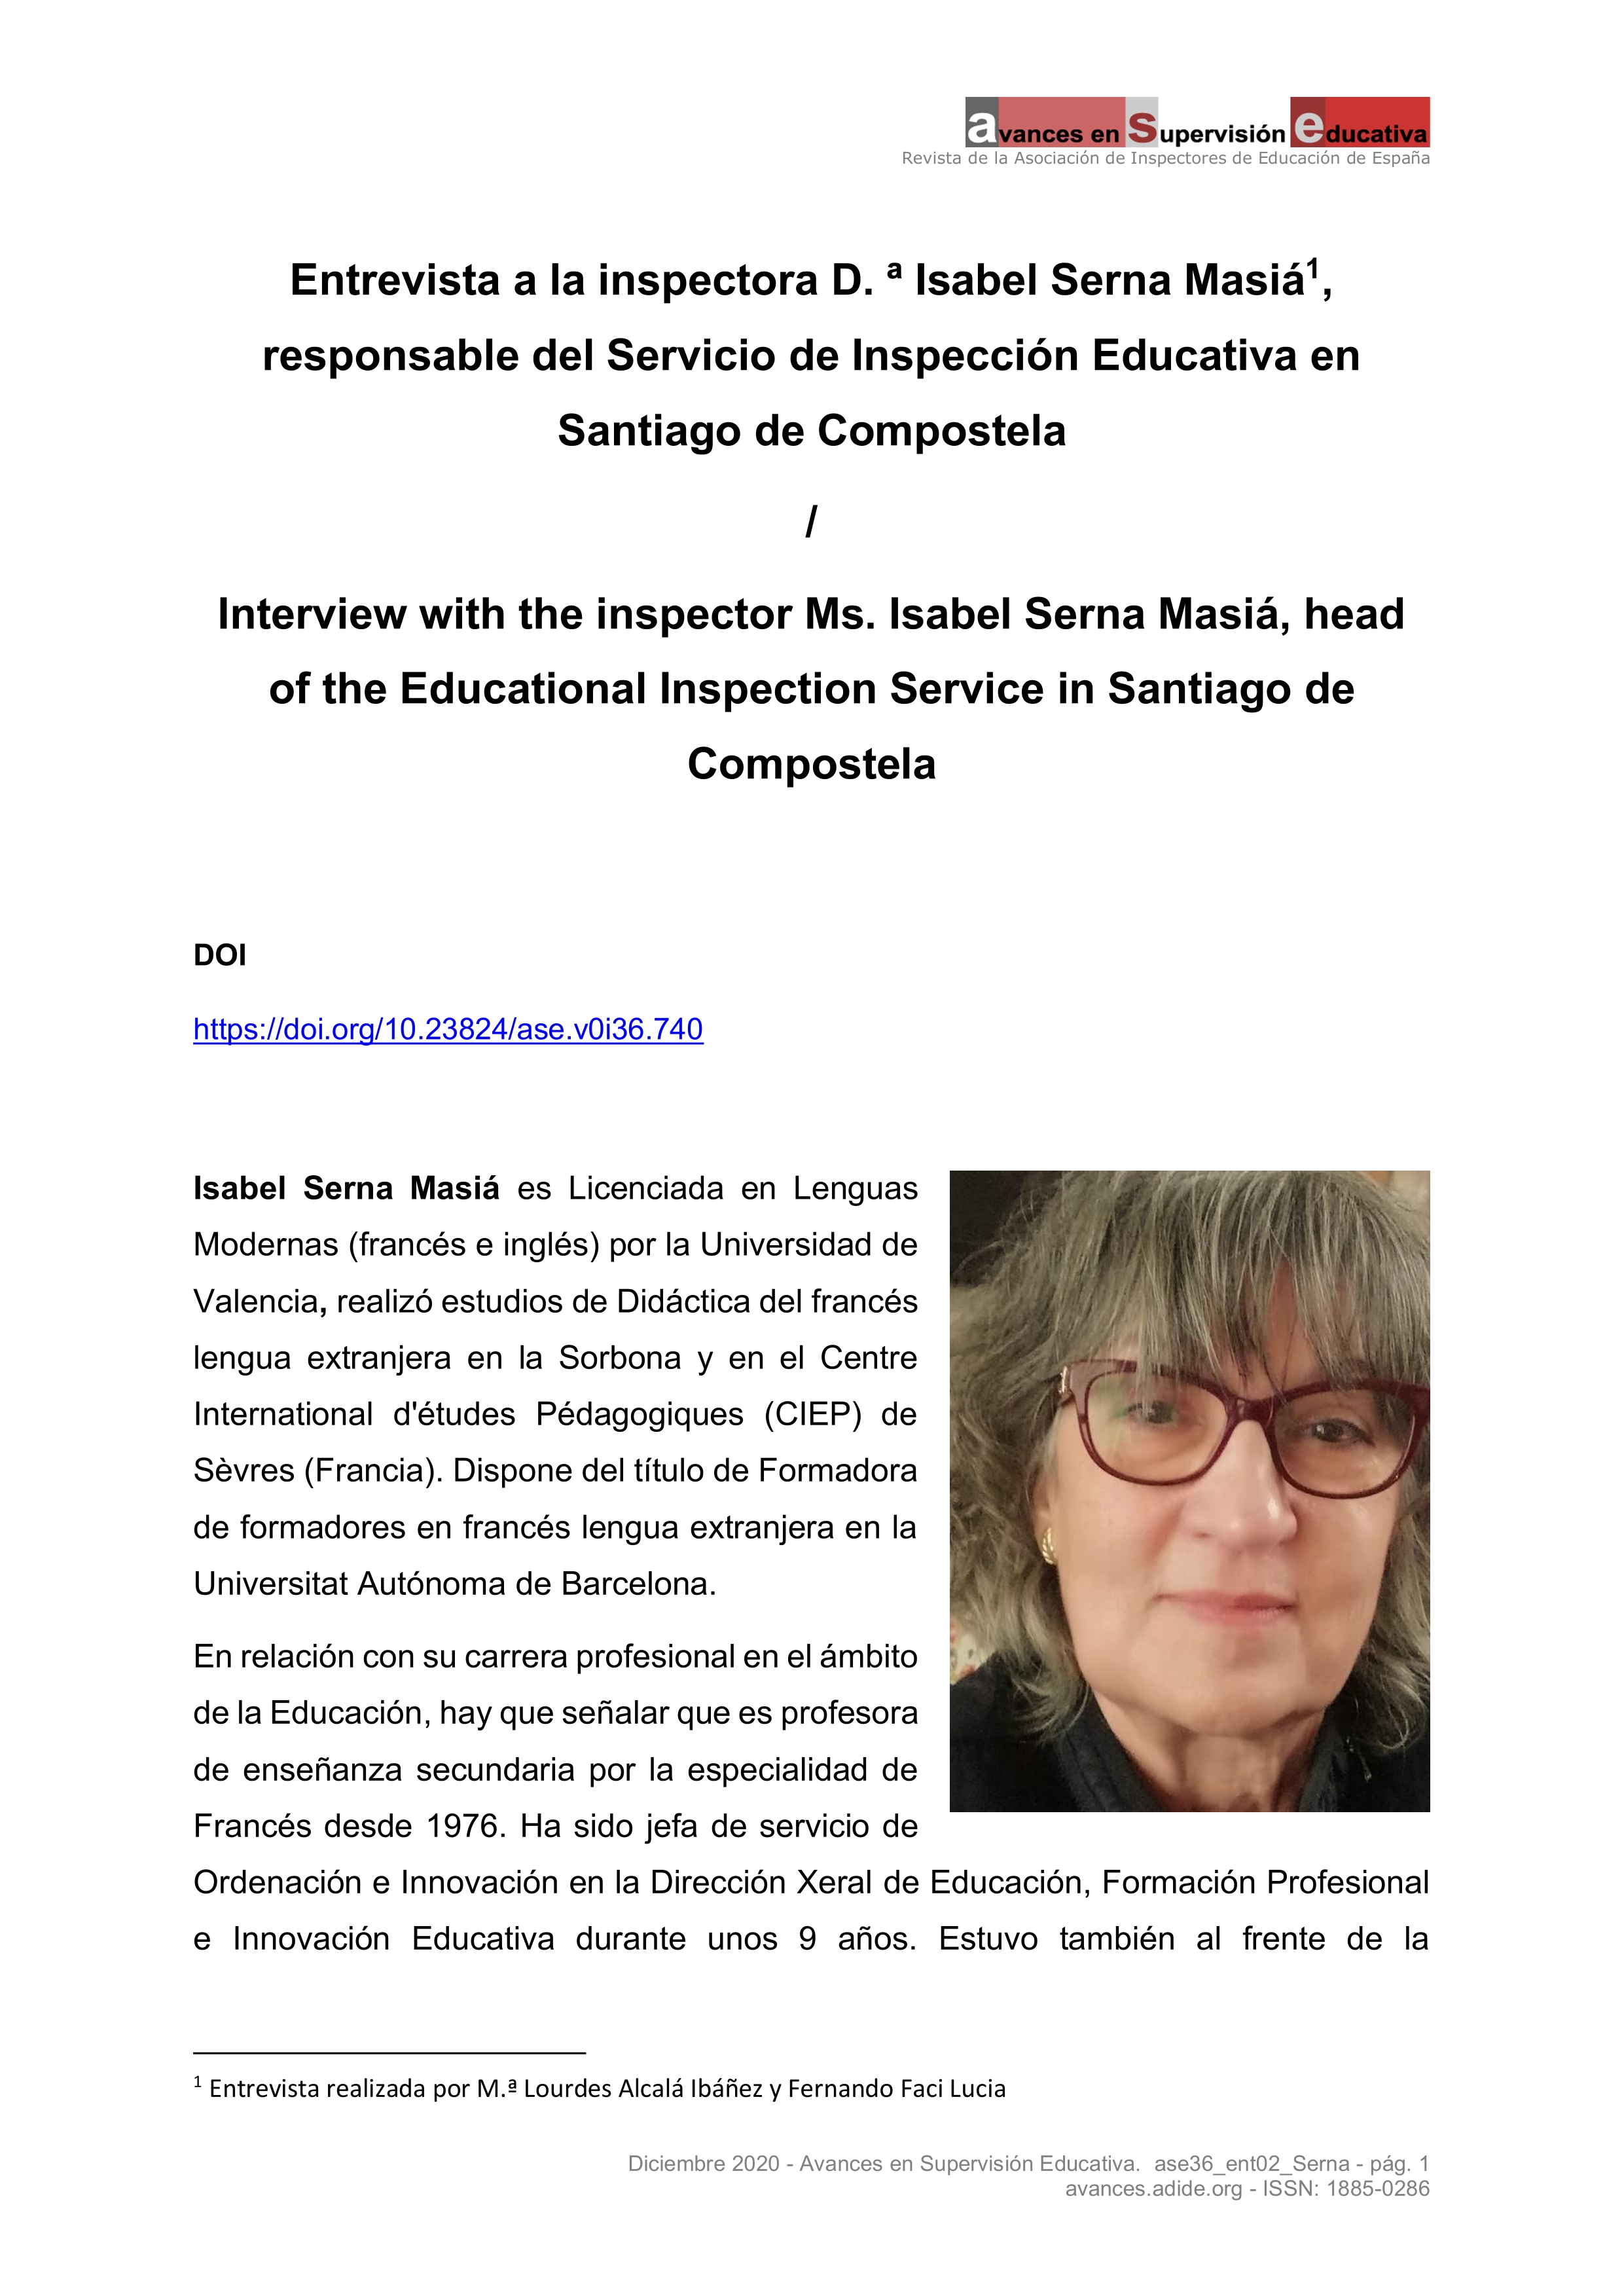 Entrevista a la inspectora Dña. Isabel Serna Masiá, responsable del Servicio de Inspección Educativa en Santiago de Compostela